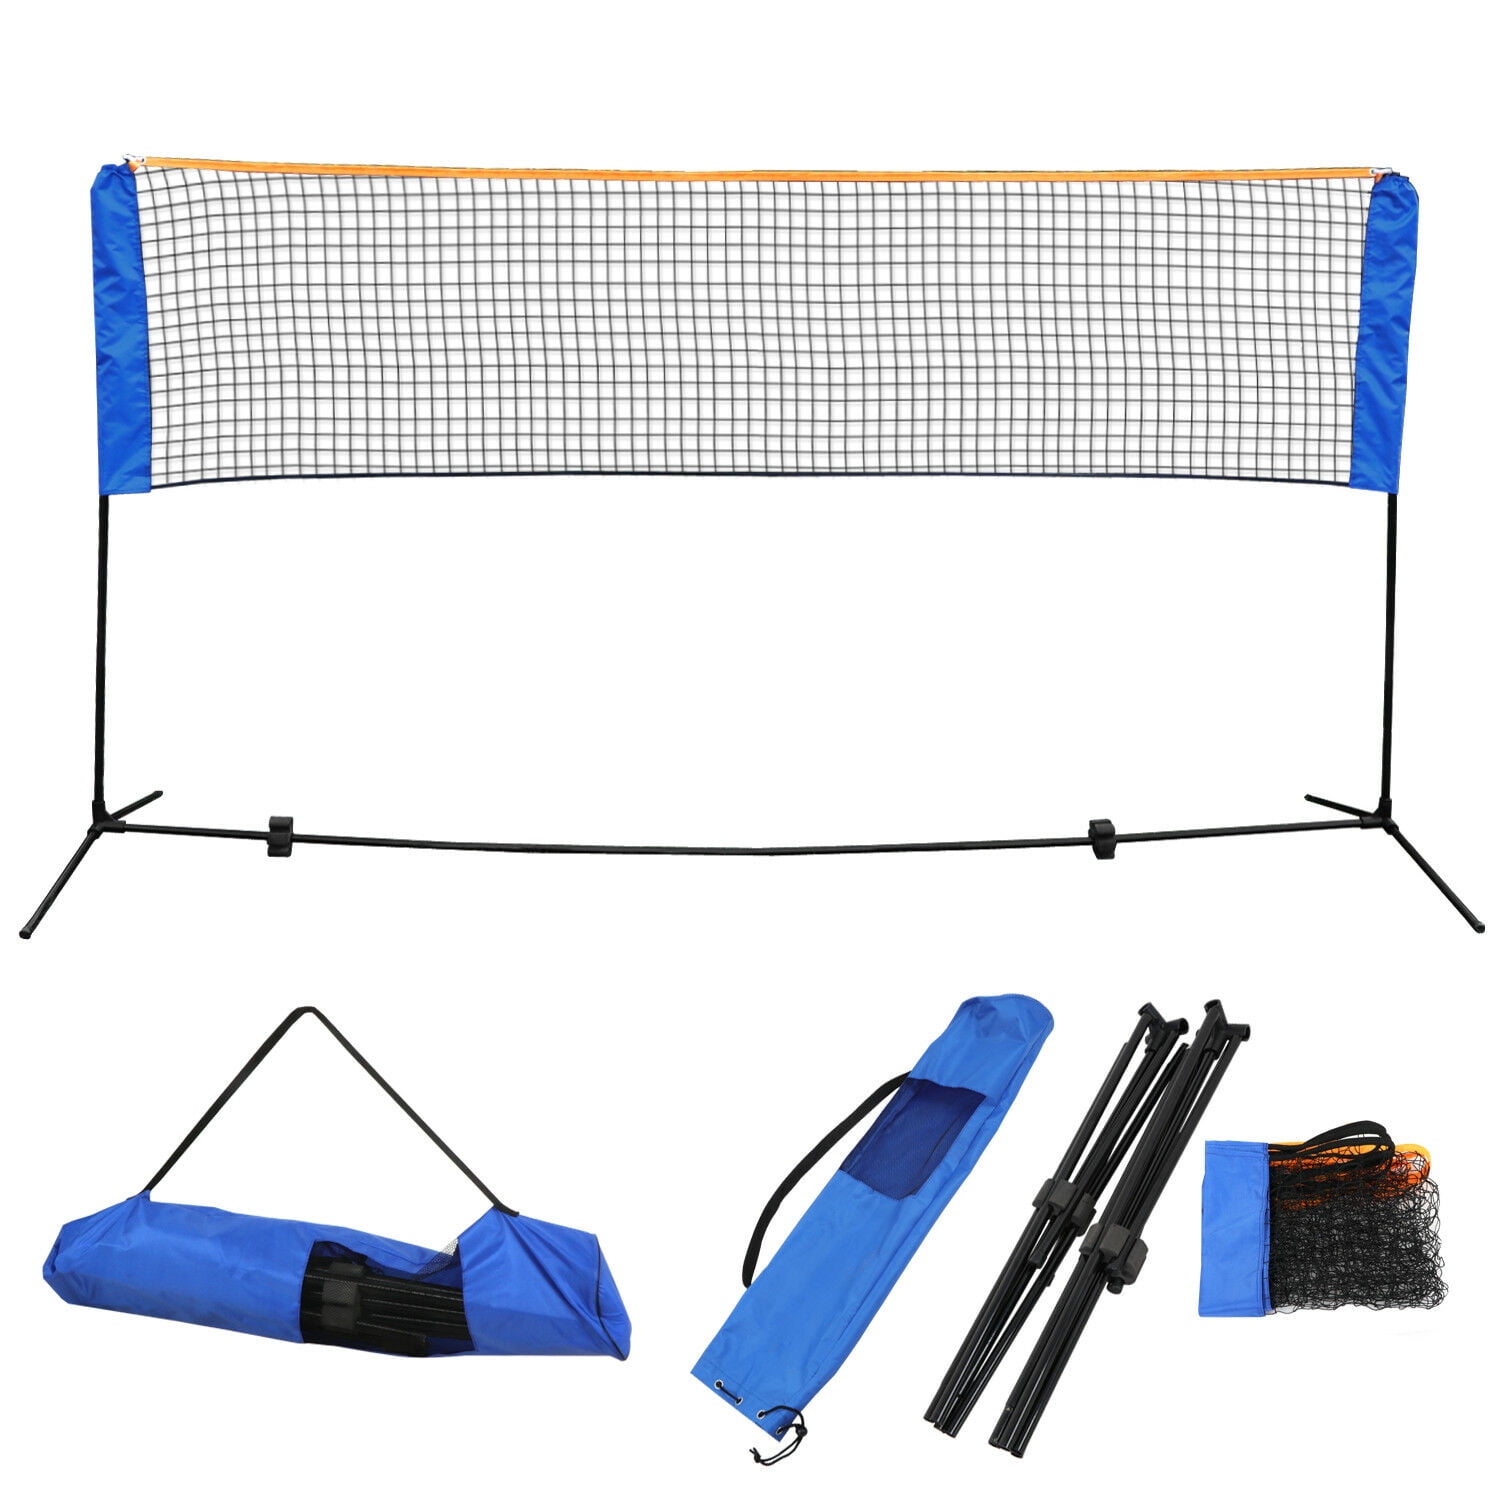 Green Badminton Volleyball Tennis Beach Net Set Indoor Outdoor Games Training 